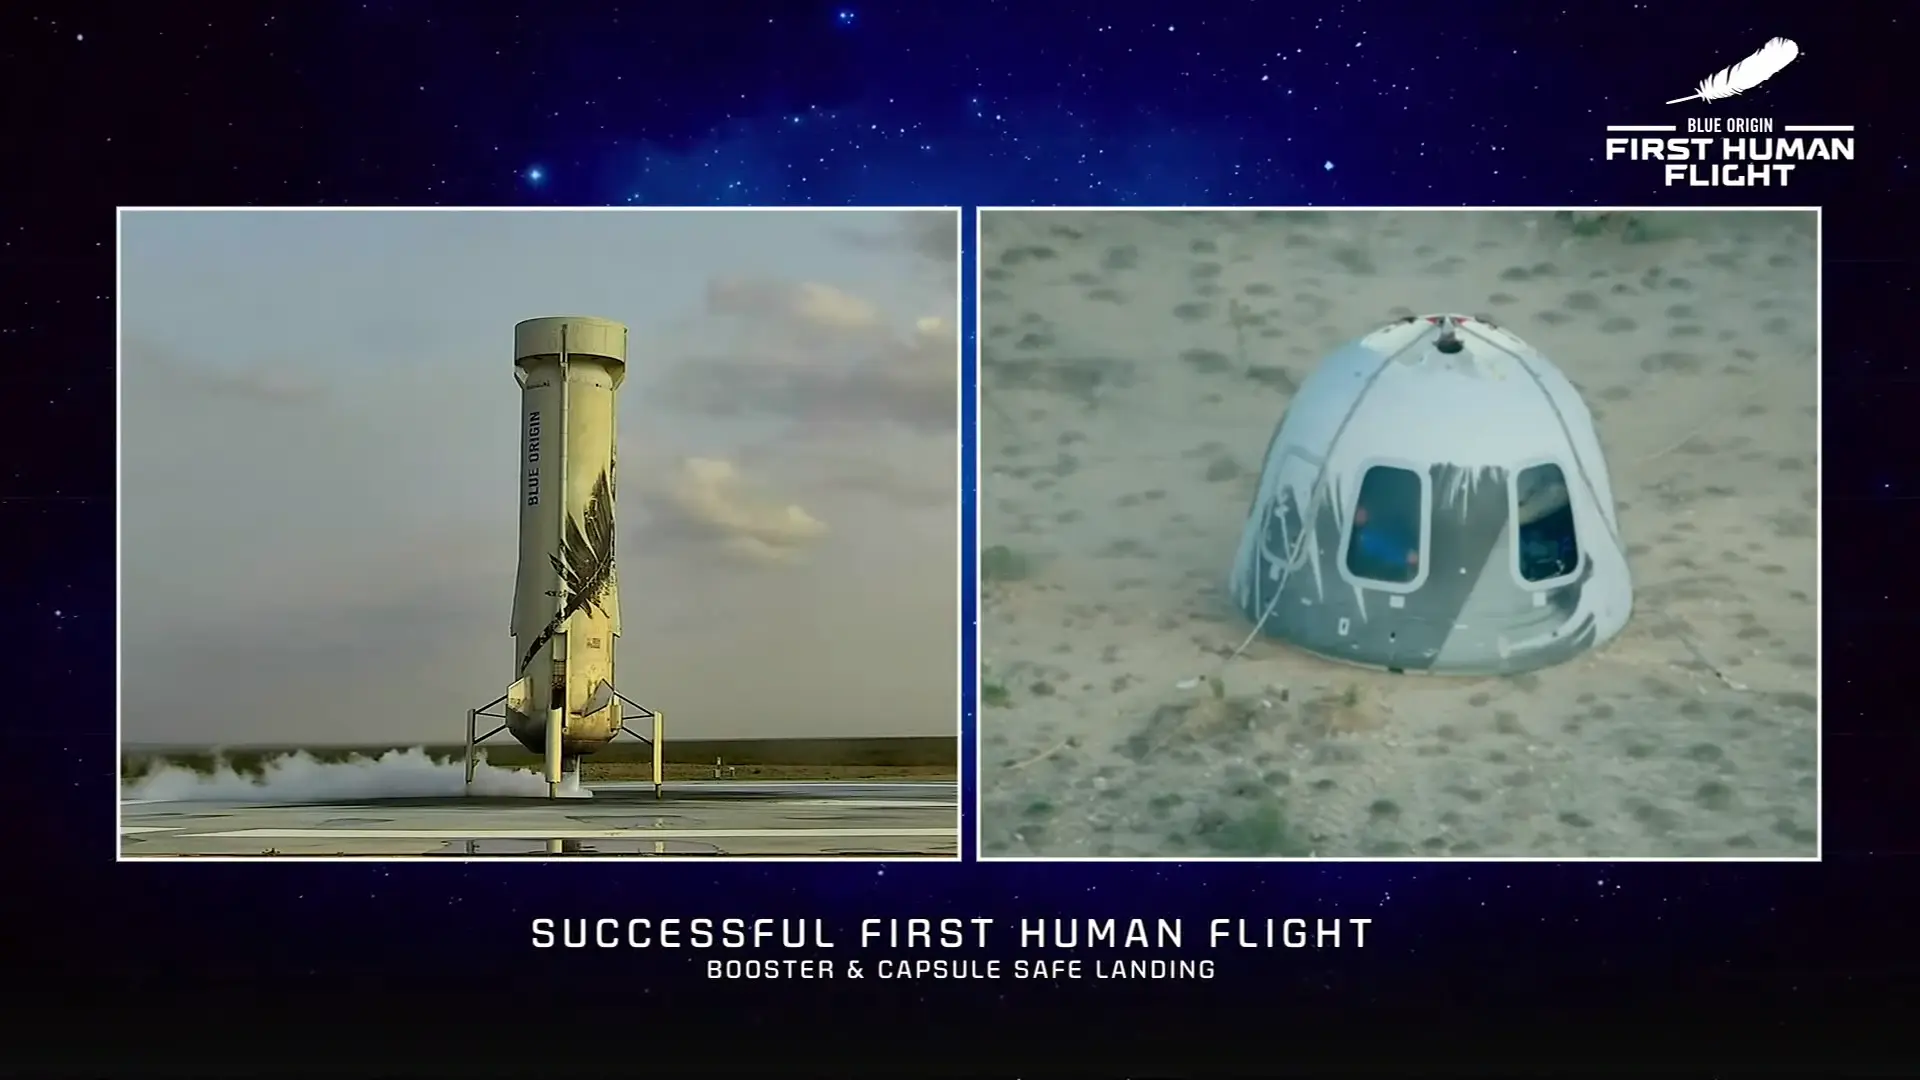 蓝色起源新谢泼德火箭和飞船首次载人飞行任务精选图集-荒原之梦